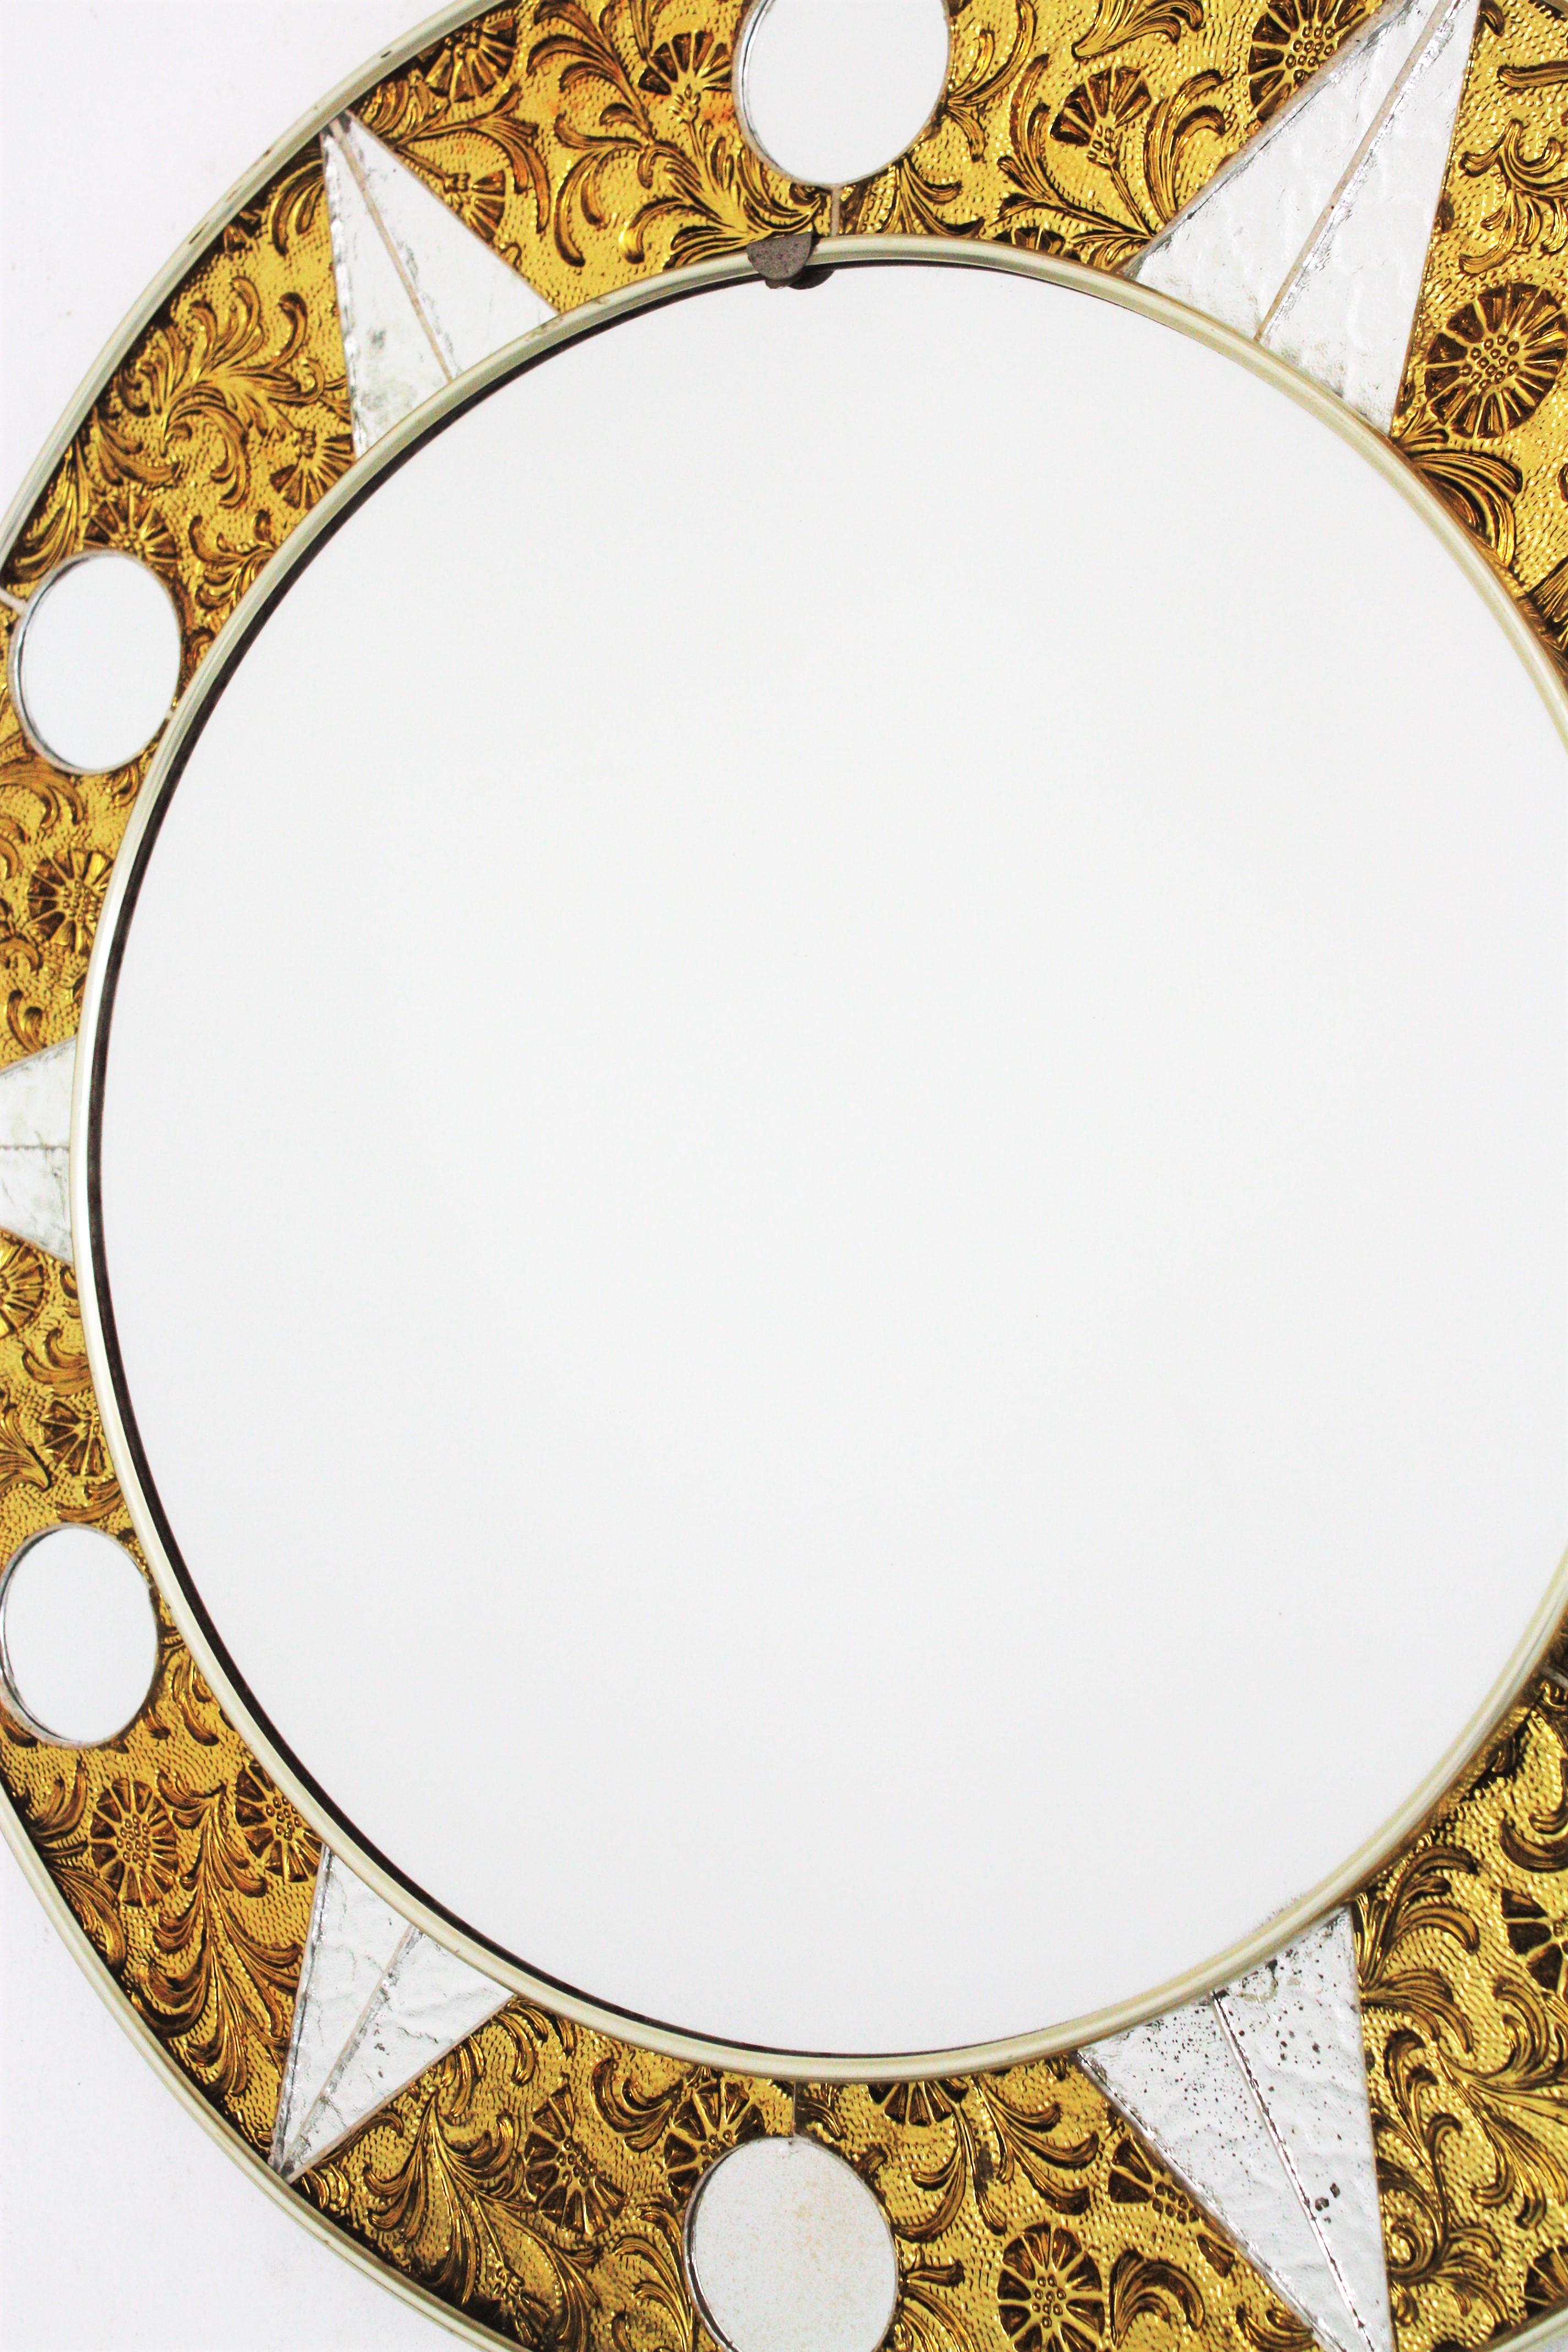 Spanish Midcentury Sunburst Glass Mosaic Round Mirror